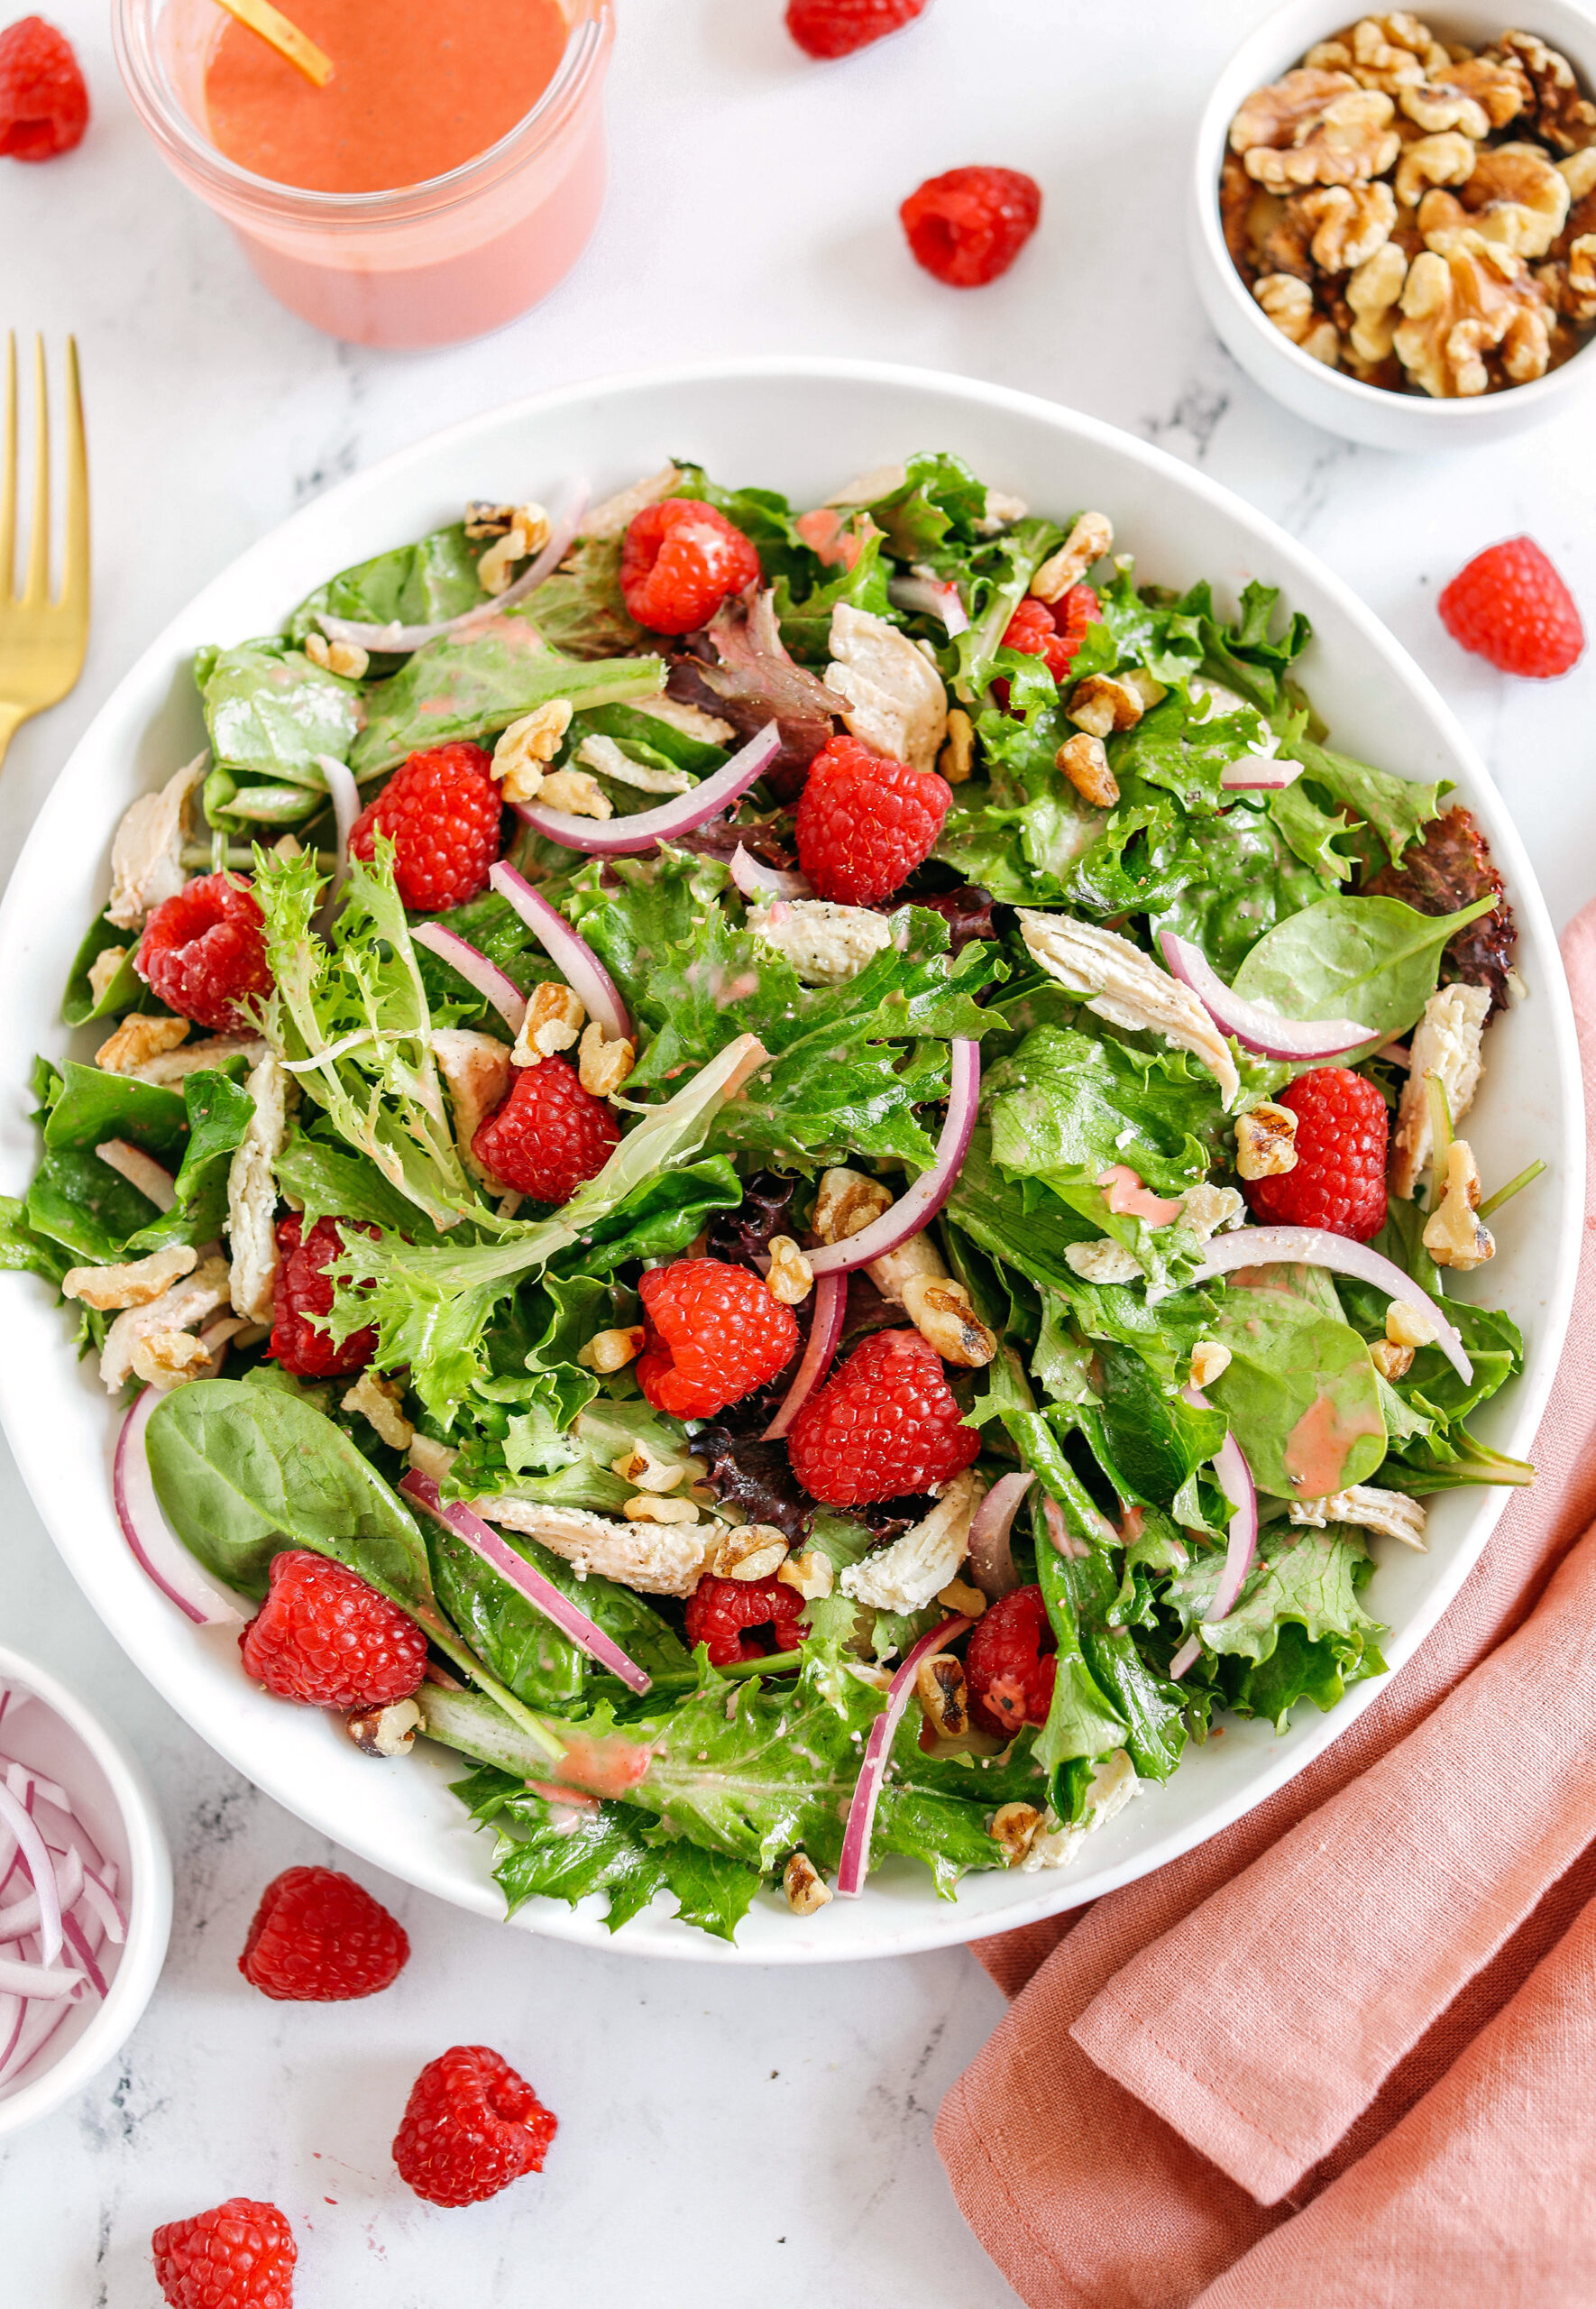 Raspberry Walnut Salad with Chicken